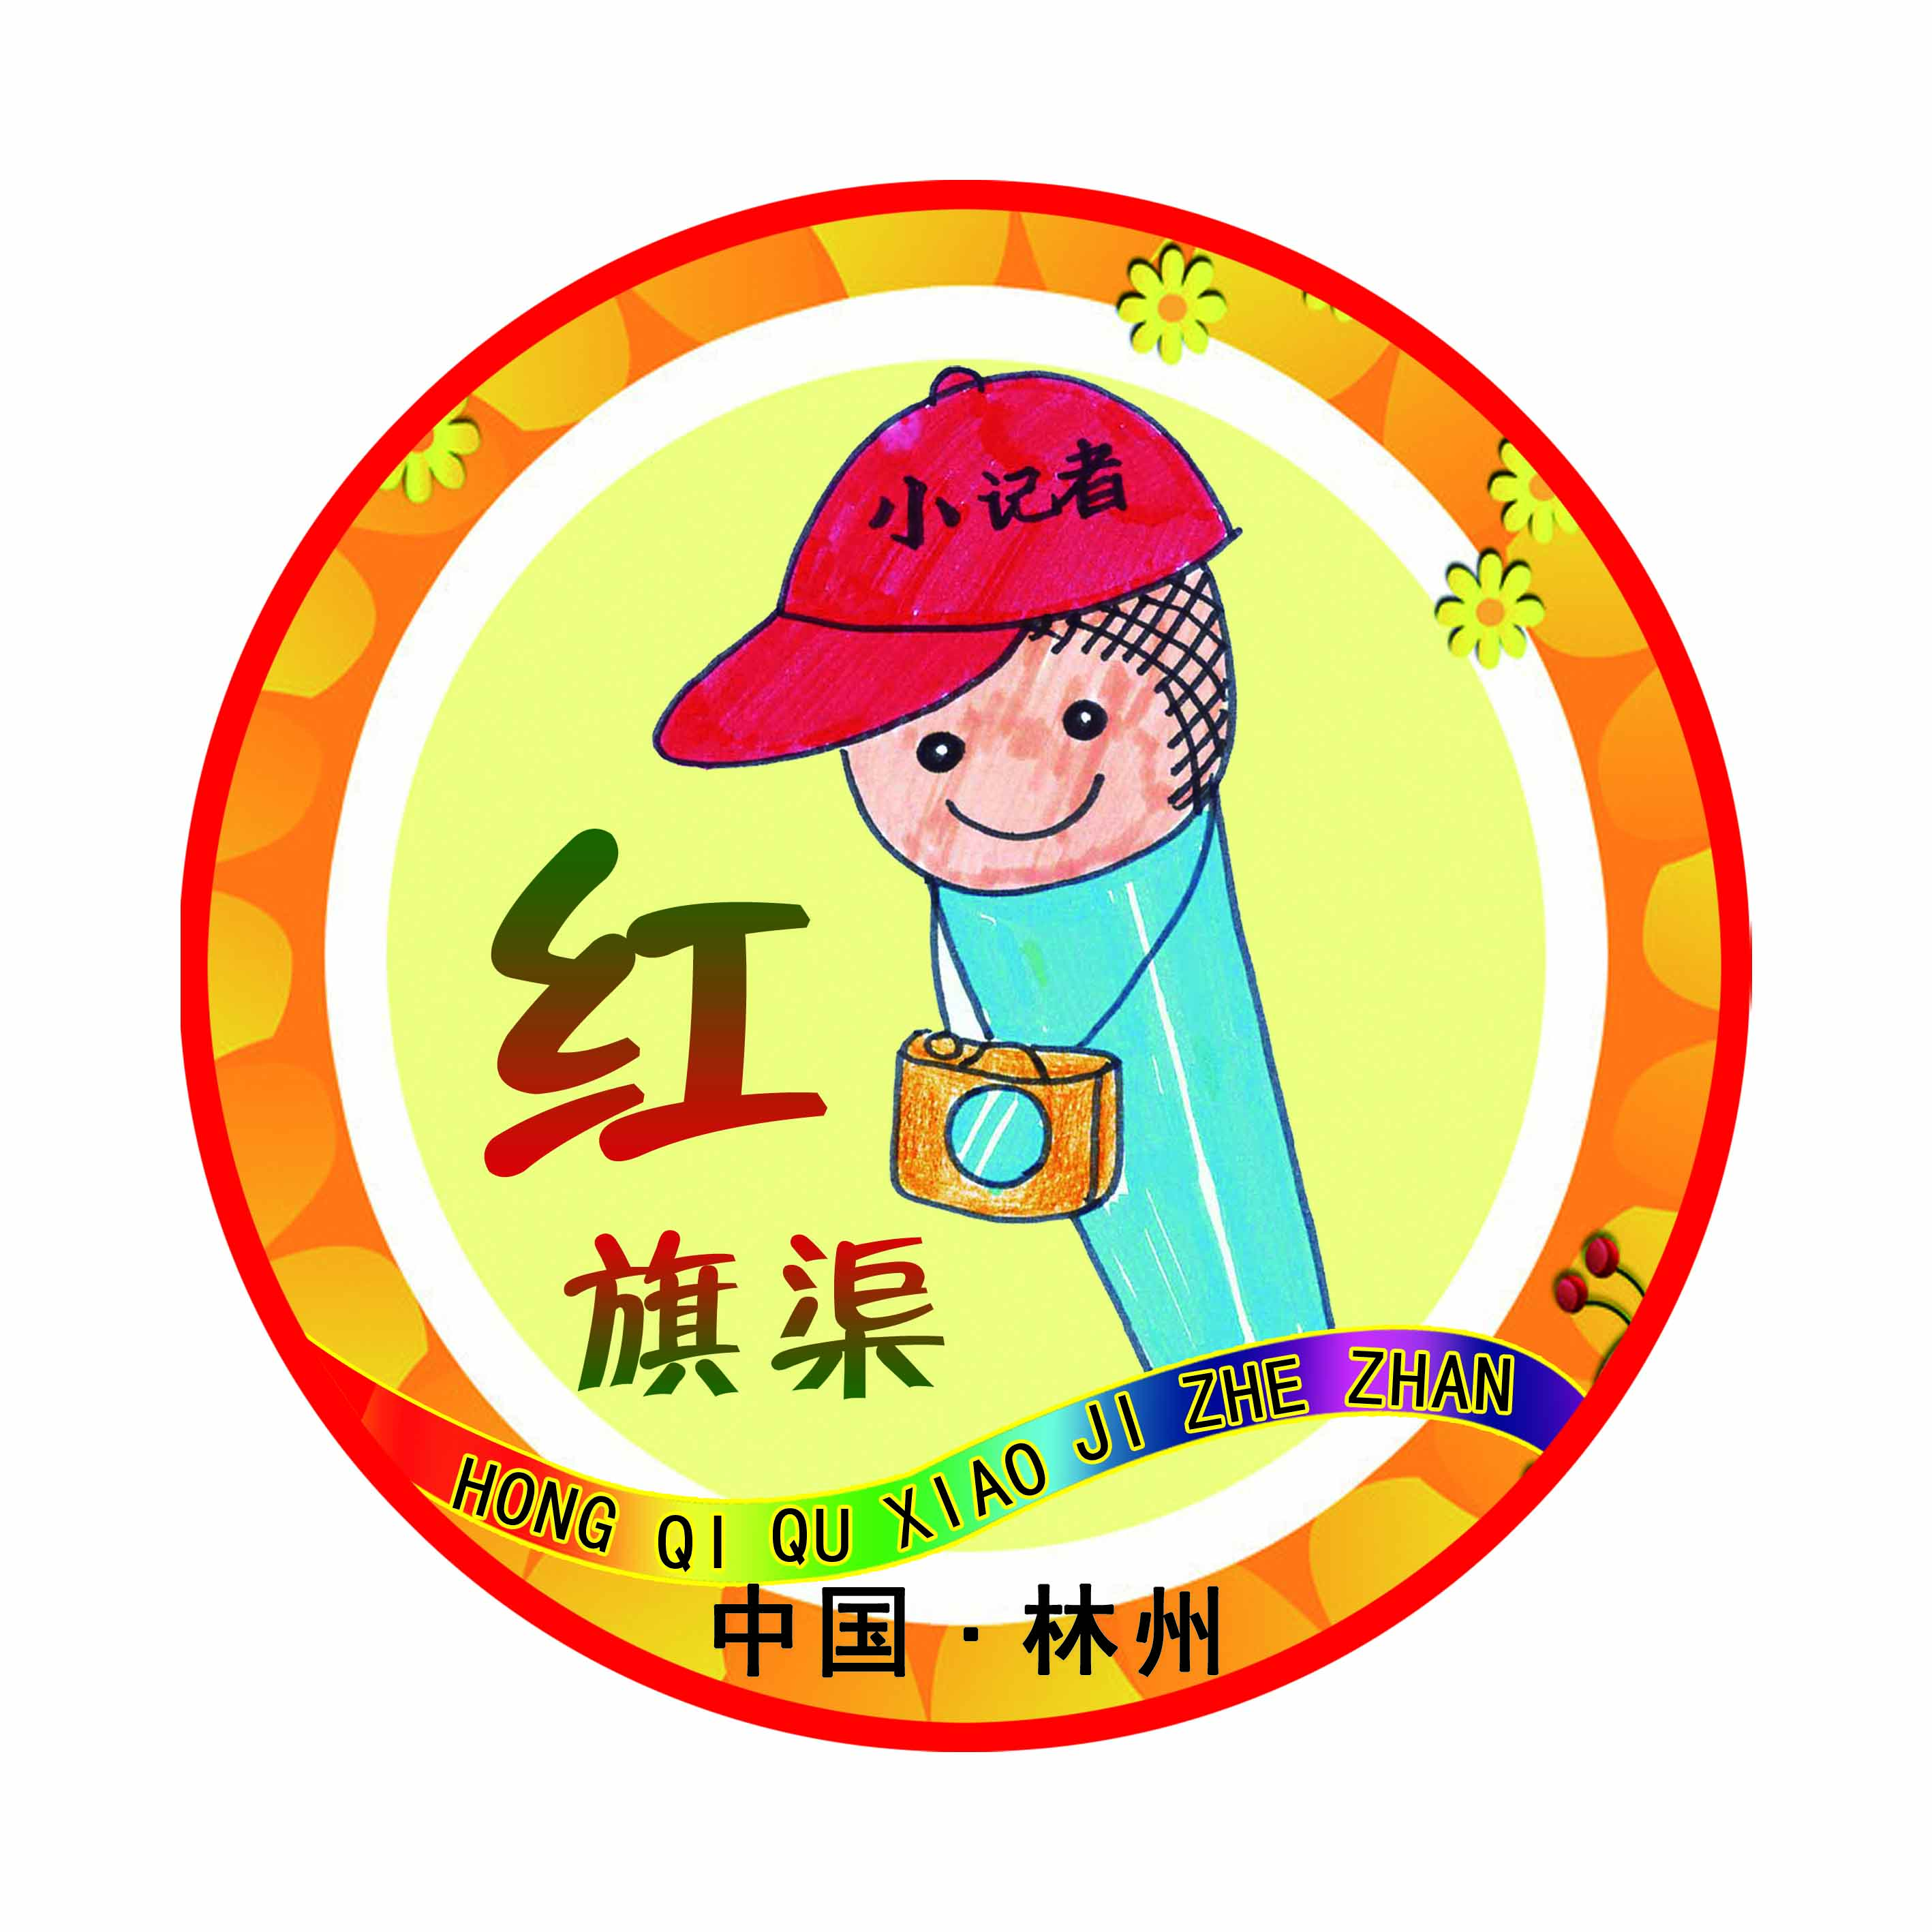 河南省林州市红旗渠小记者站成立于今年4月份正式成立